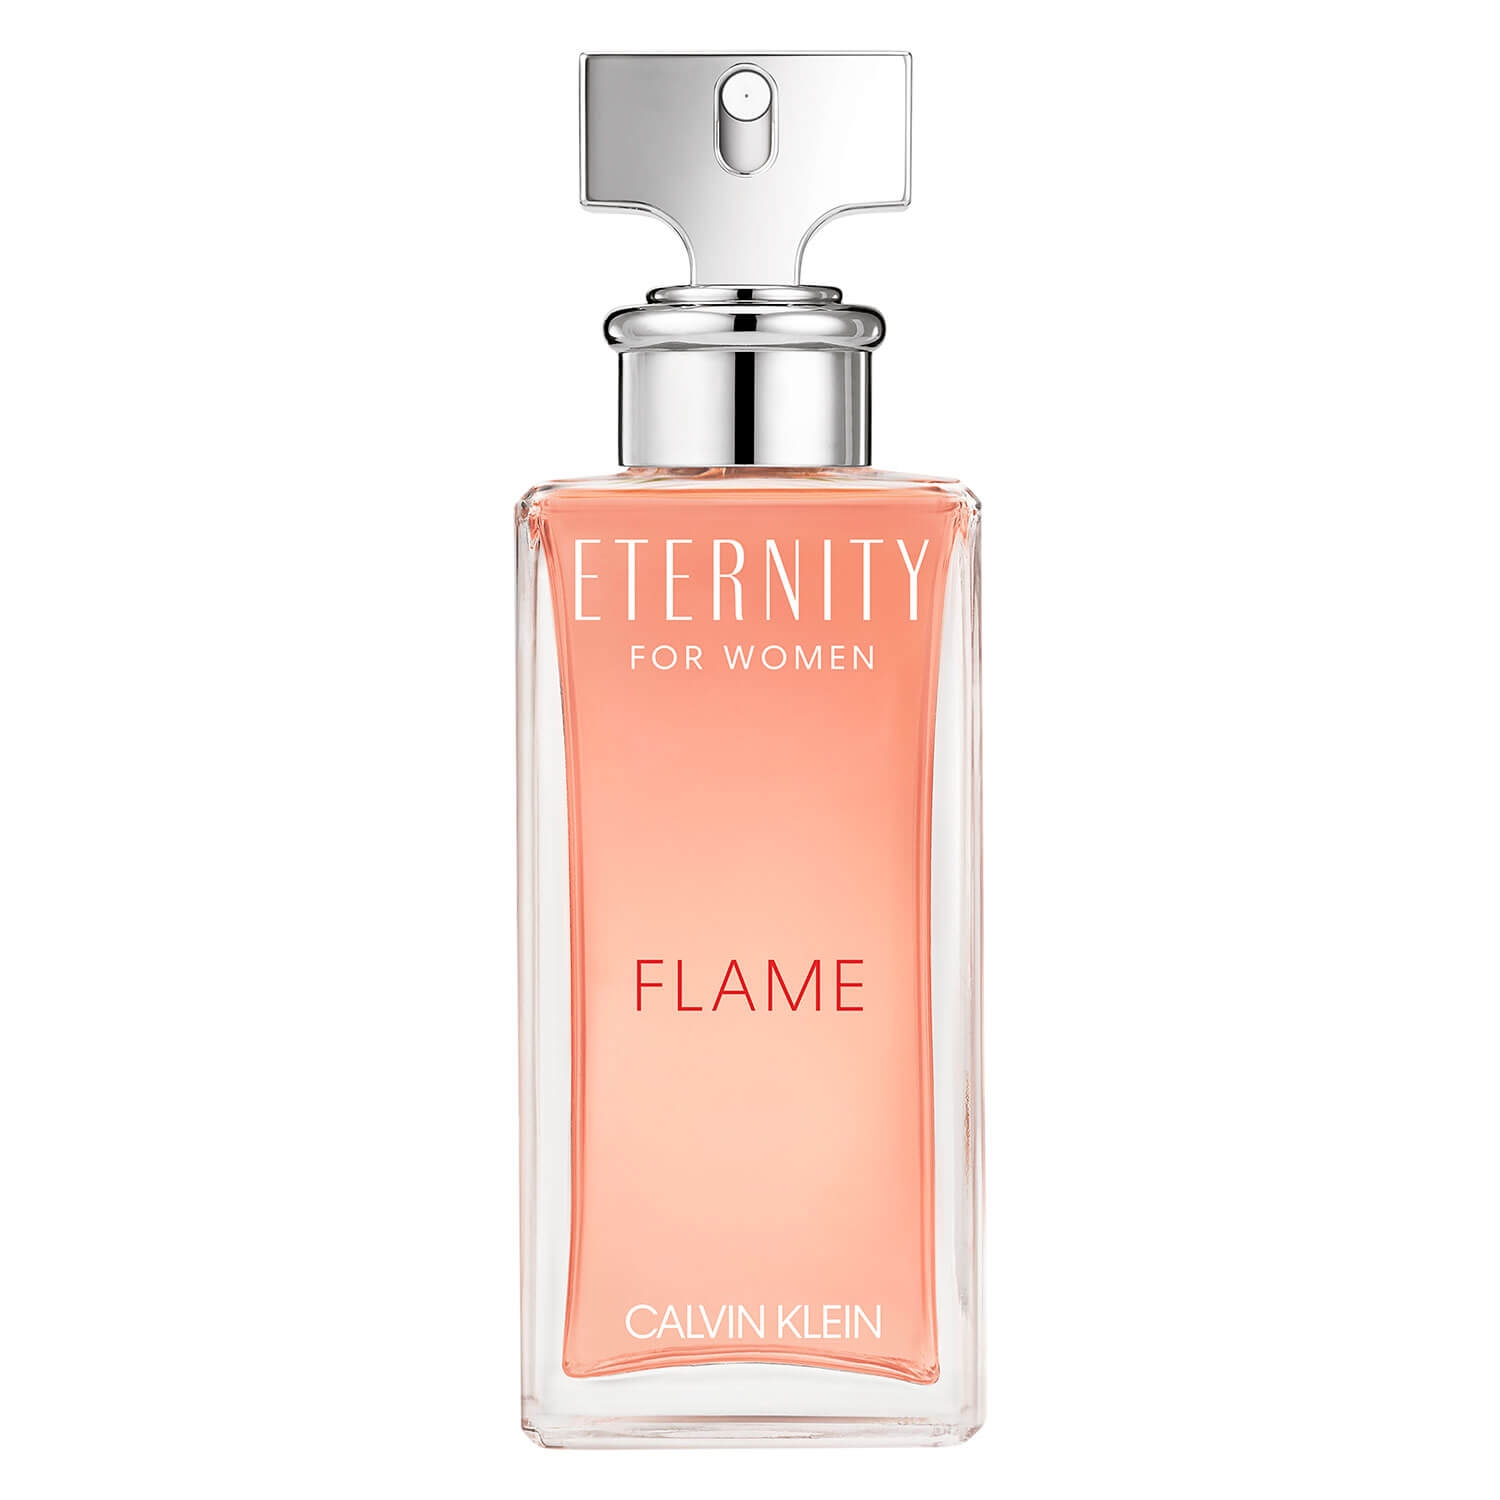 Product image from Eternity - For Women Flame Eau de Parfum